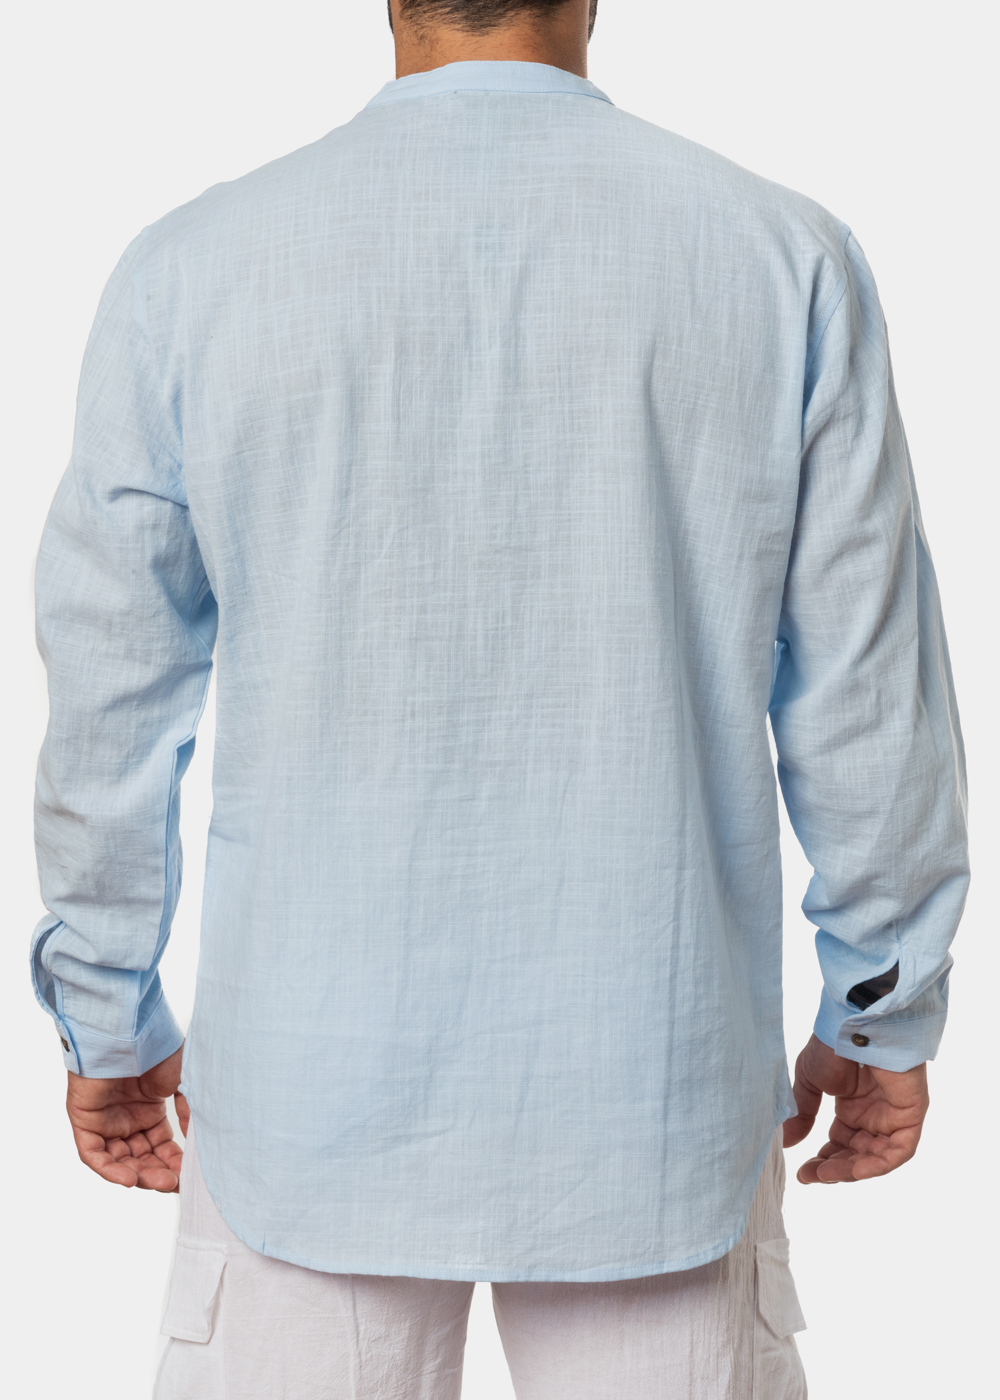 Light blue mandarin shirt w/ long sleeve